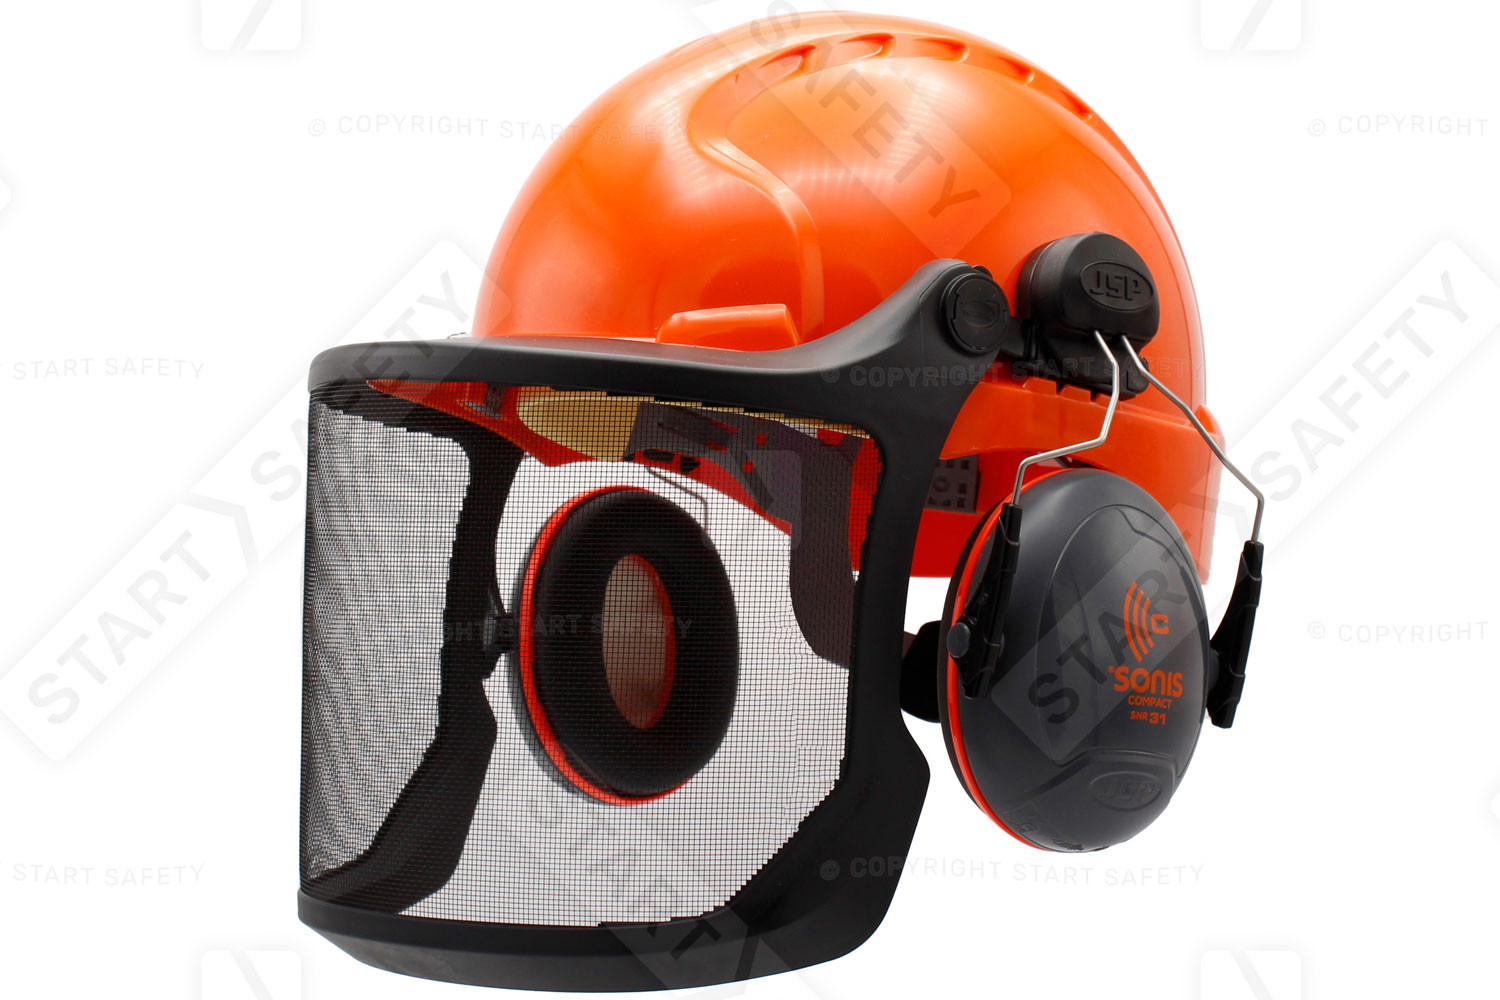 Forestry Basic Helmet Kit With M2 Steel Mesh Visor